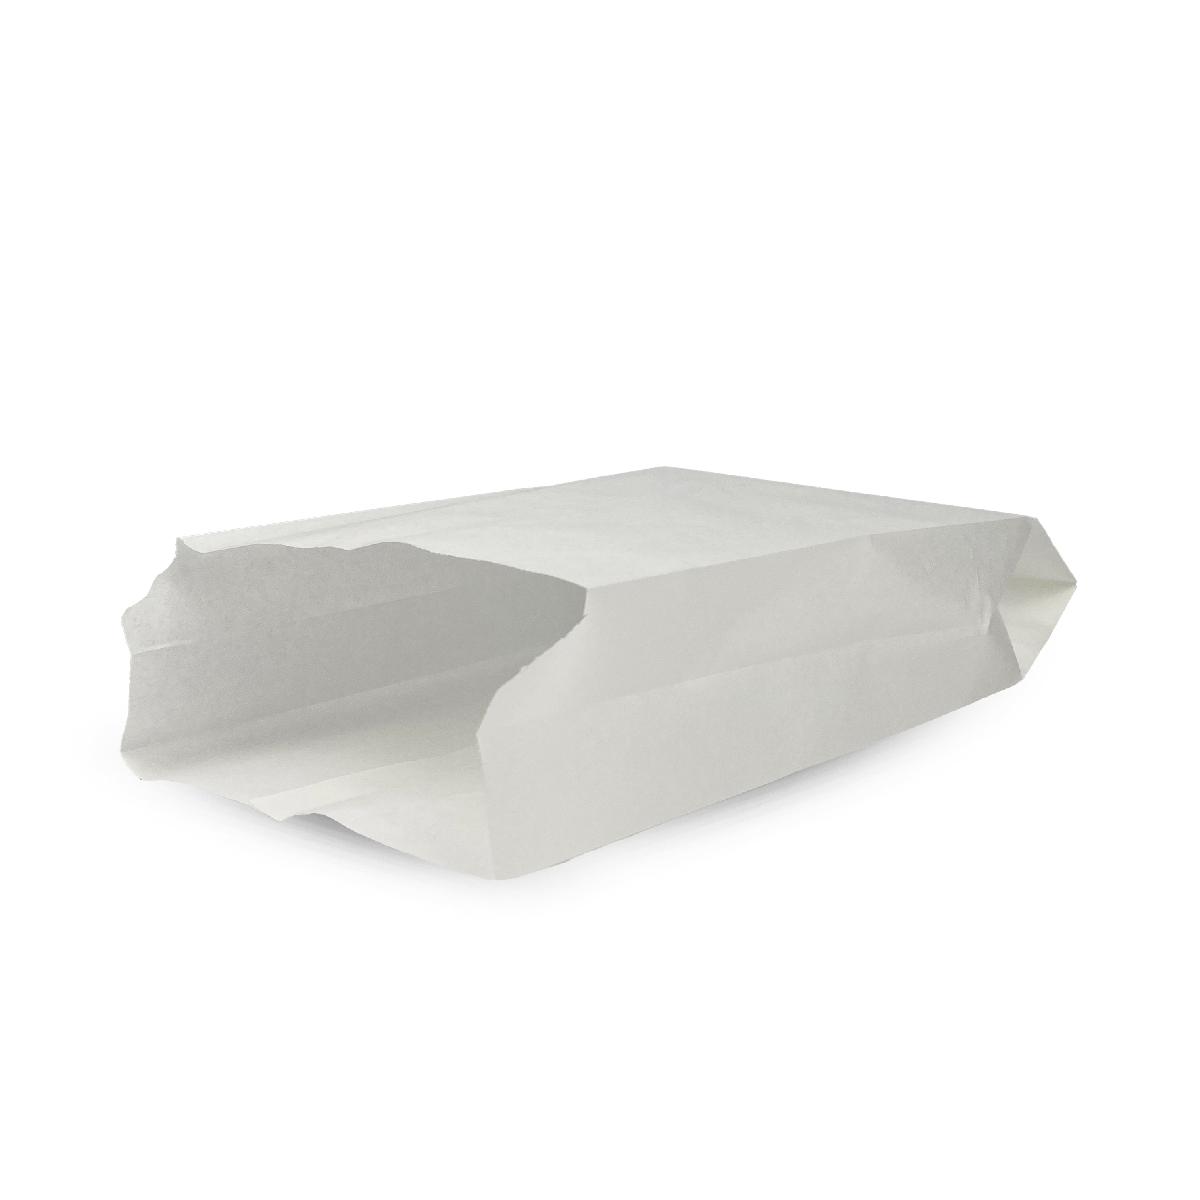 Бумажный пакет V-обр дно 140*60*250мм жиростойкий белый б/п (100/2000)